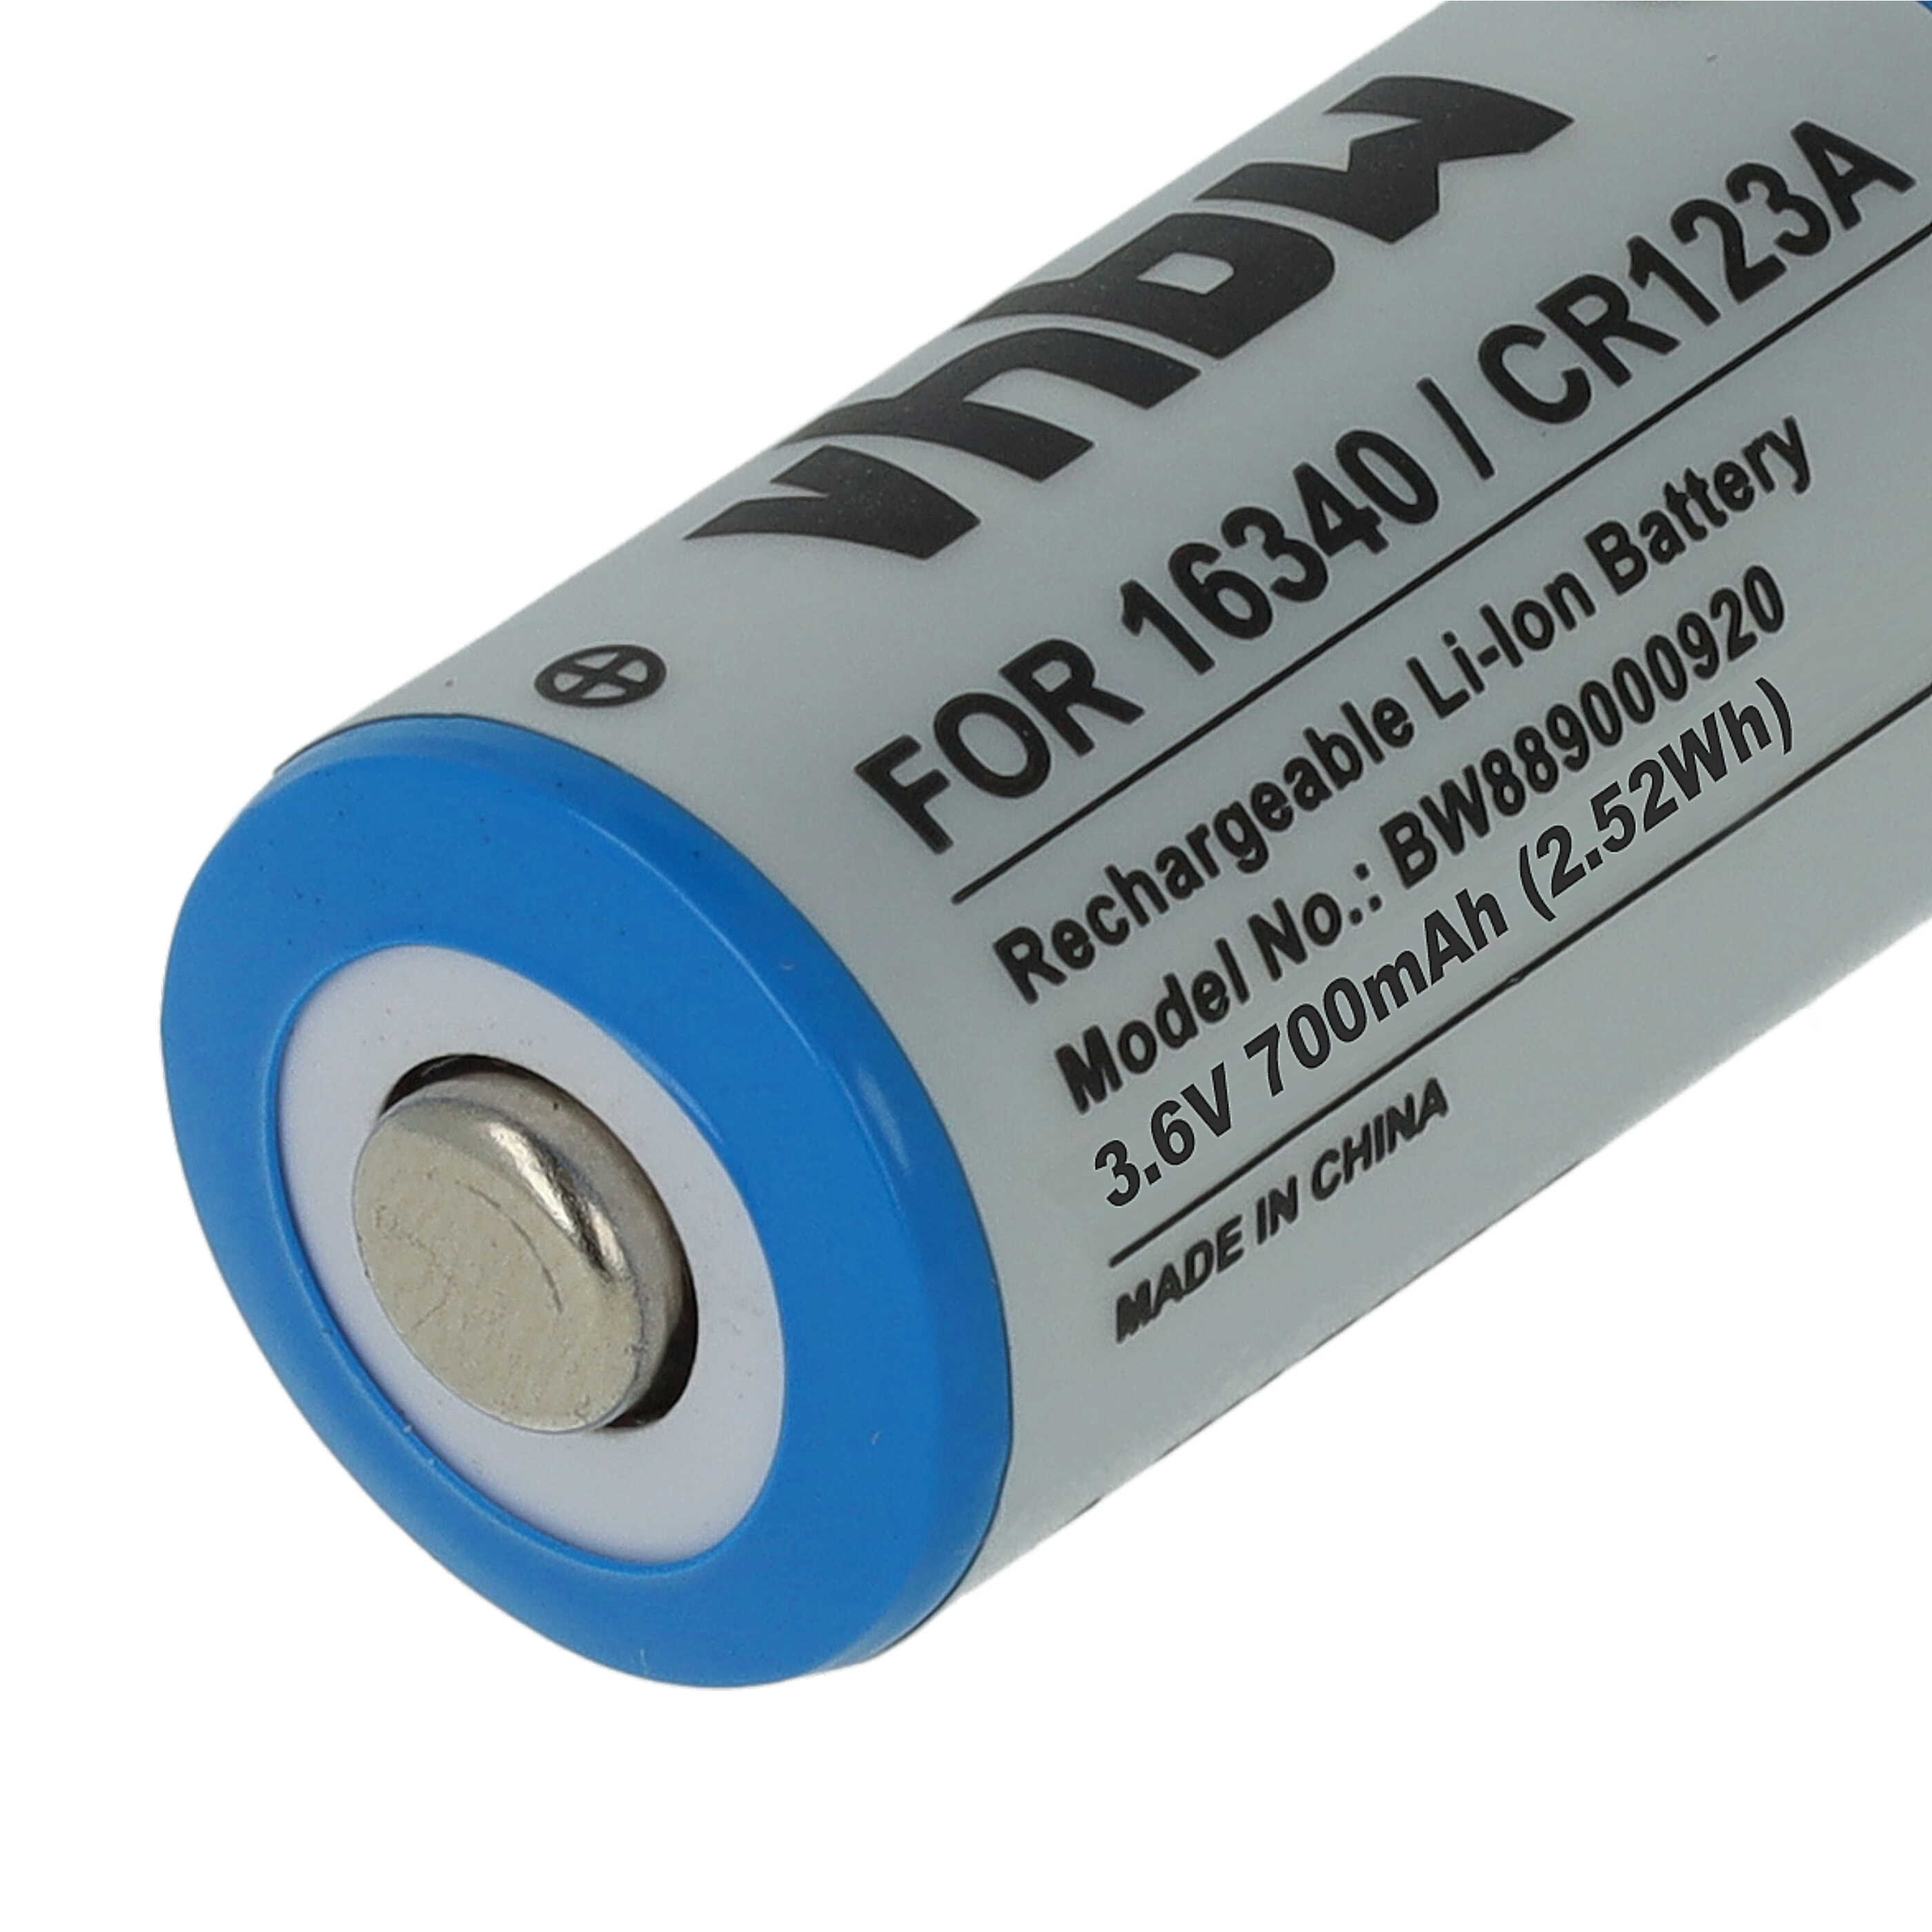 10x Akumulator zamiennik 16340, DL123A, CR123R, CR17335, CR17345, CR123A - 700 mAh 3,6 V Li-Ion, 1x ogniwo